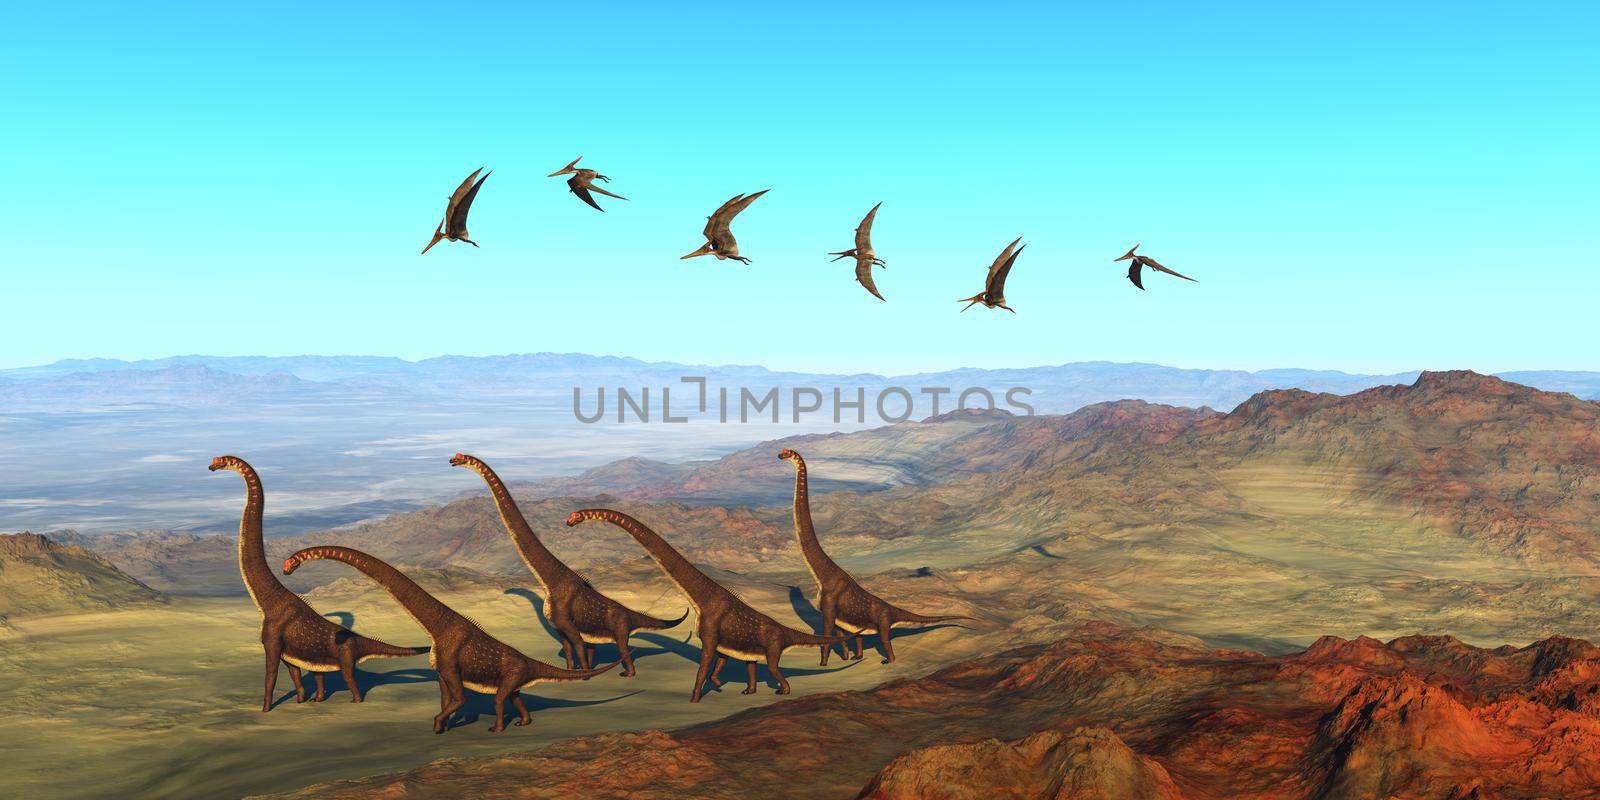 Giraffatitan Dinosaurs by Catmando